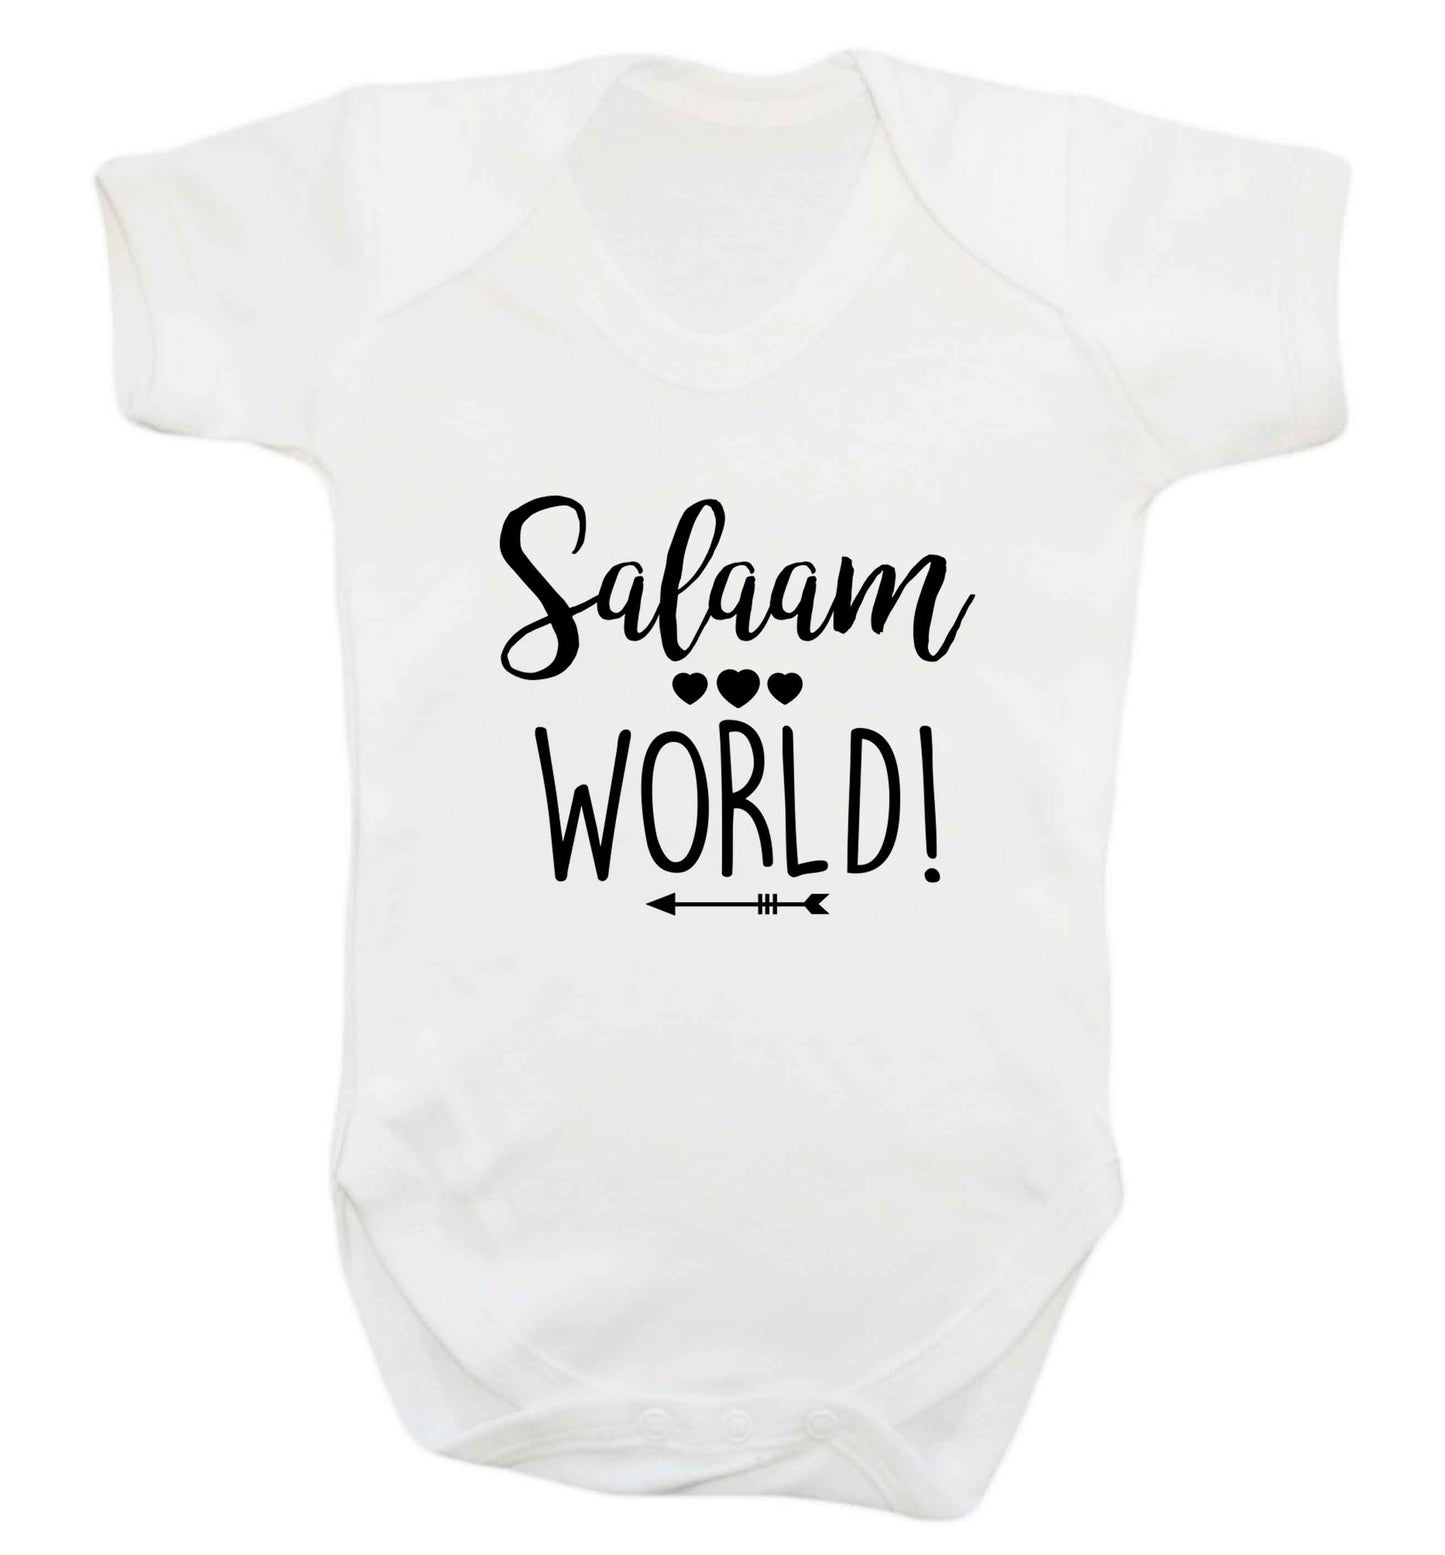 Salaam world baby vest white 18-24 months